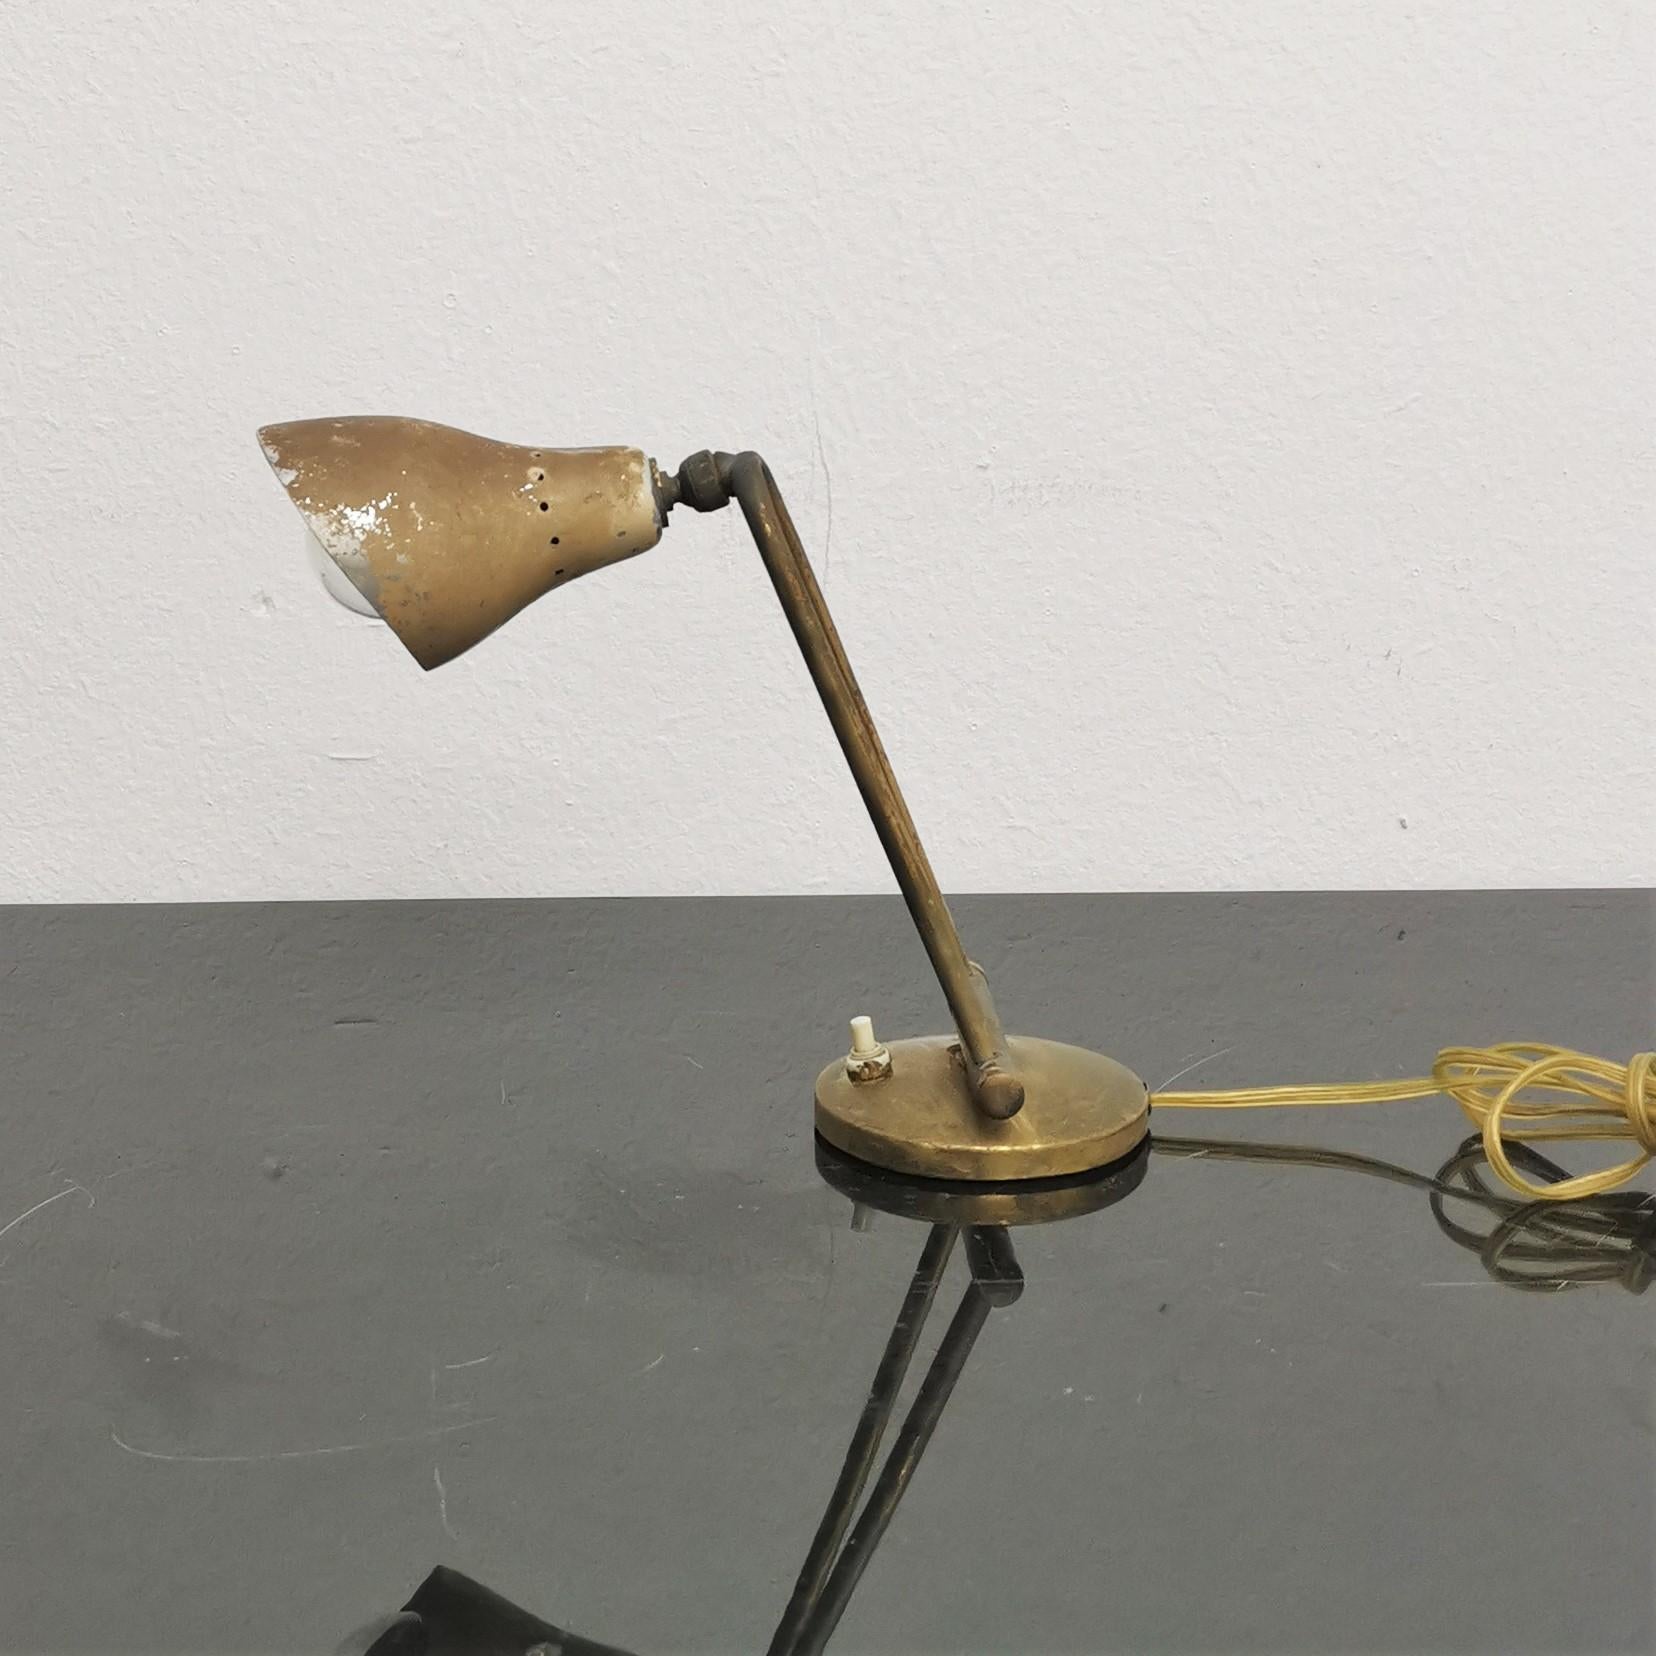 Schöne Tischlampe aus goldenem Messing, verstellbar durch zwei Gelenke.
Wird Stilnovo zugeschrieben, 50er Jahre, Italien.
Alters- und gebrauchsbedingte Abnutzungserscheinungen.